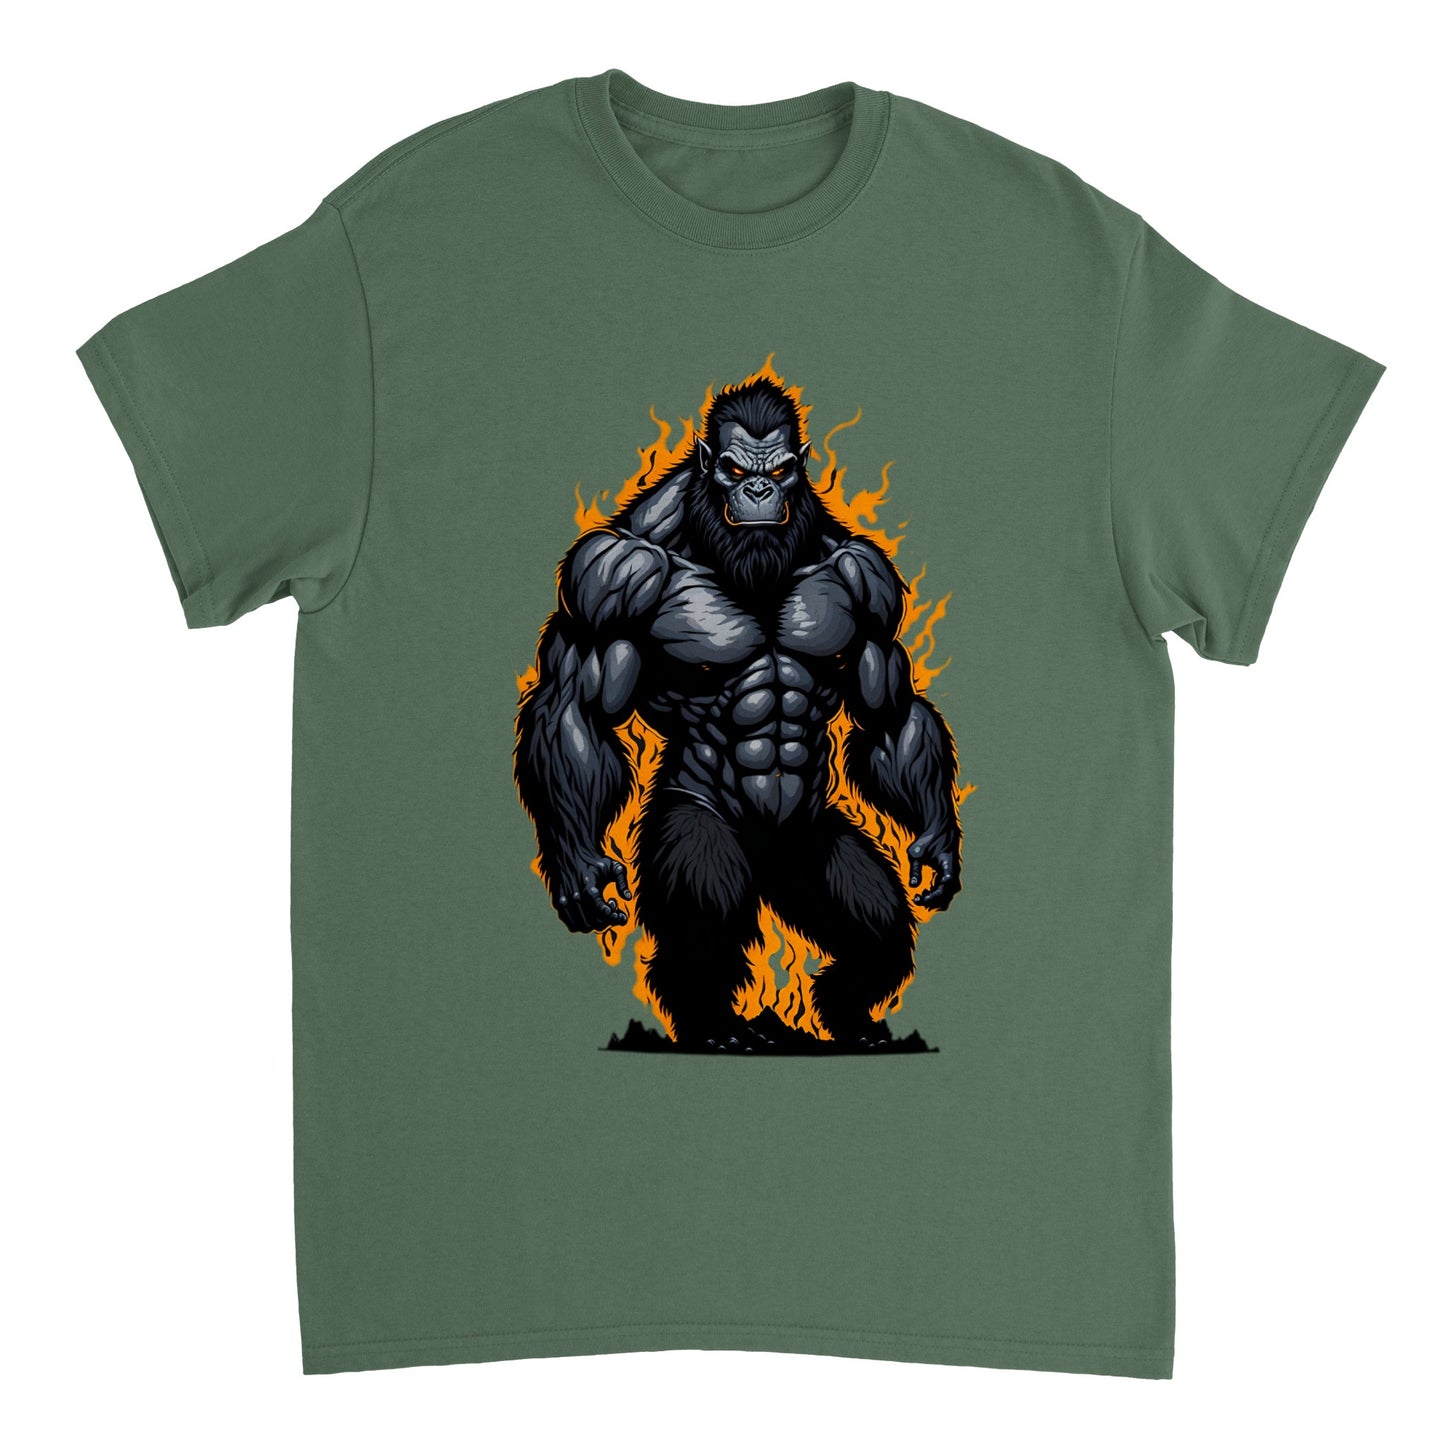 3D Bigfoot Art - Heavyweight Unisex Crewneck T-shirt 2